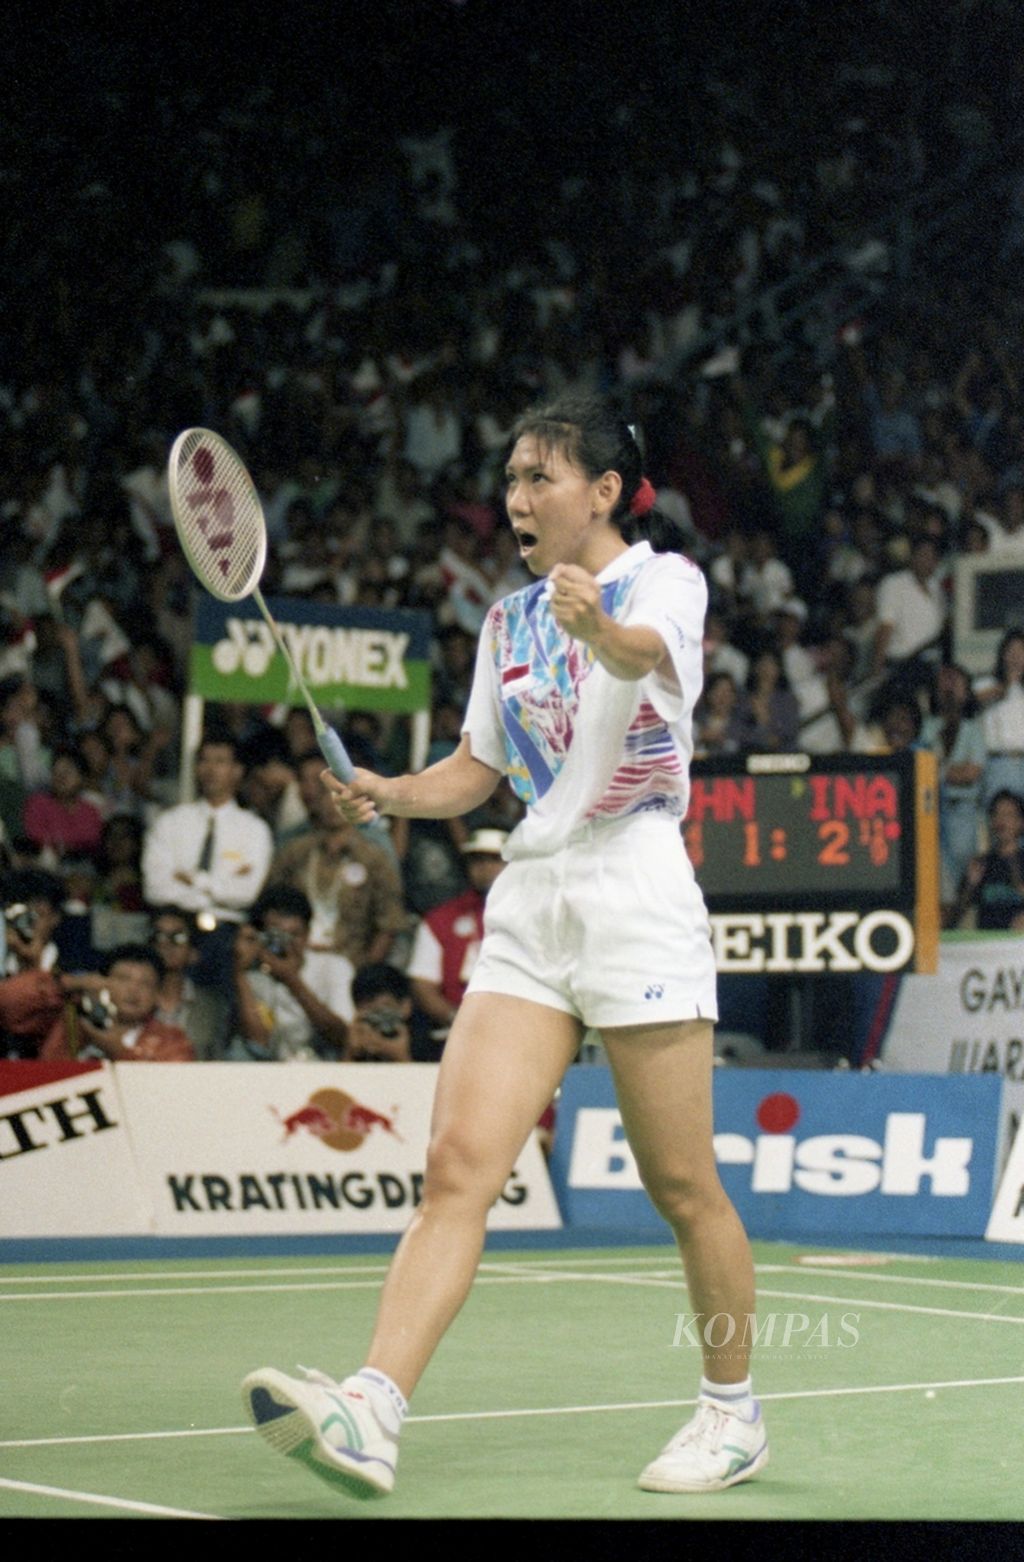 Susy Susanti menjadi pembuka kemenangan Indonesia ketika menghadapi pemain China, Ye Zhaoying, pada partai pembuka final Piala Uber di Istora Senayan, Jakarta, Jumat (20/5/1994). Susy menang 11-4, 12-10. 